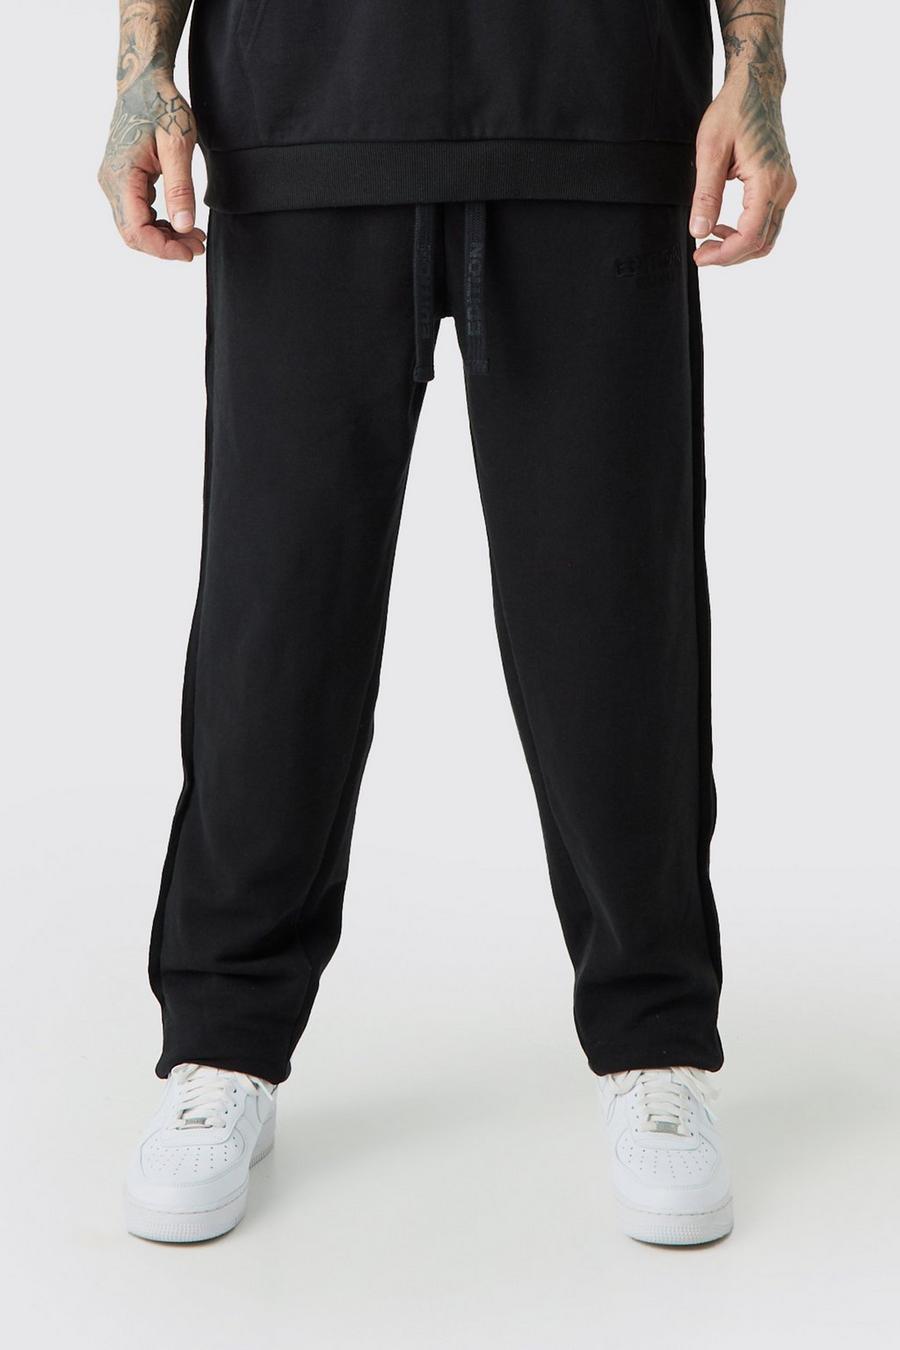 Pantalón deportivo Tall oversize grueso con alforza EDITION, Black